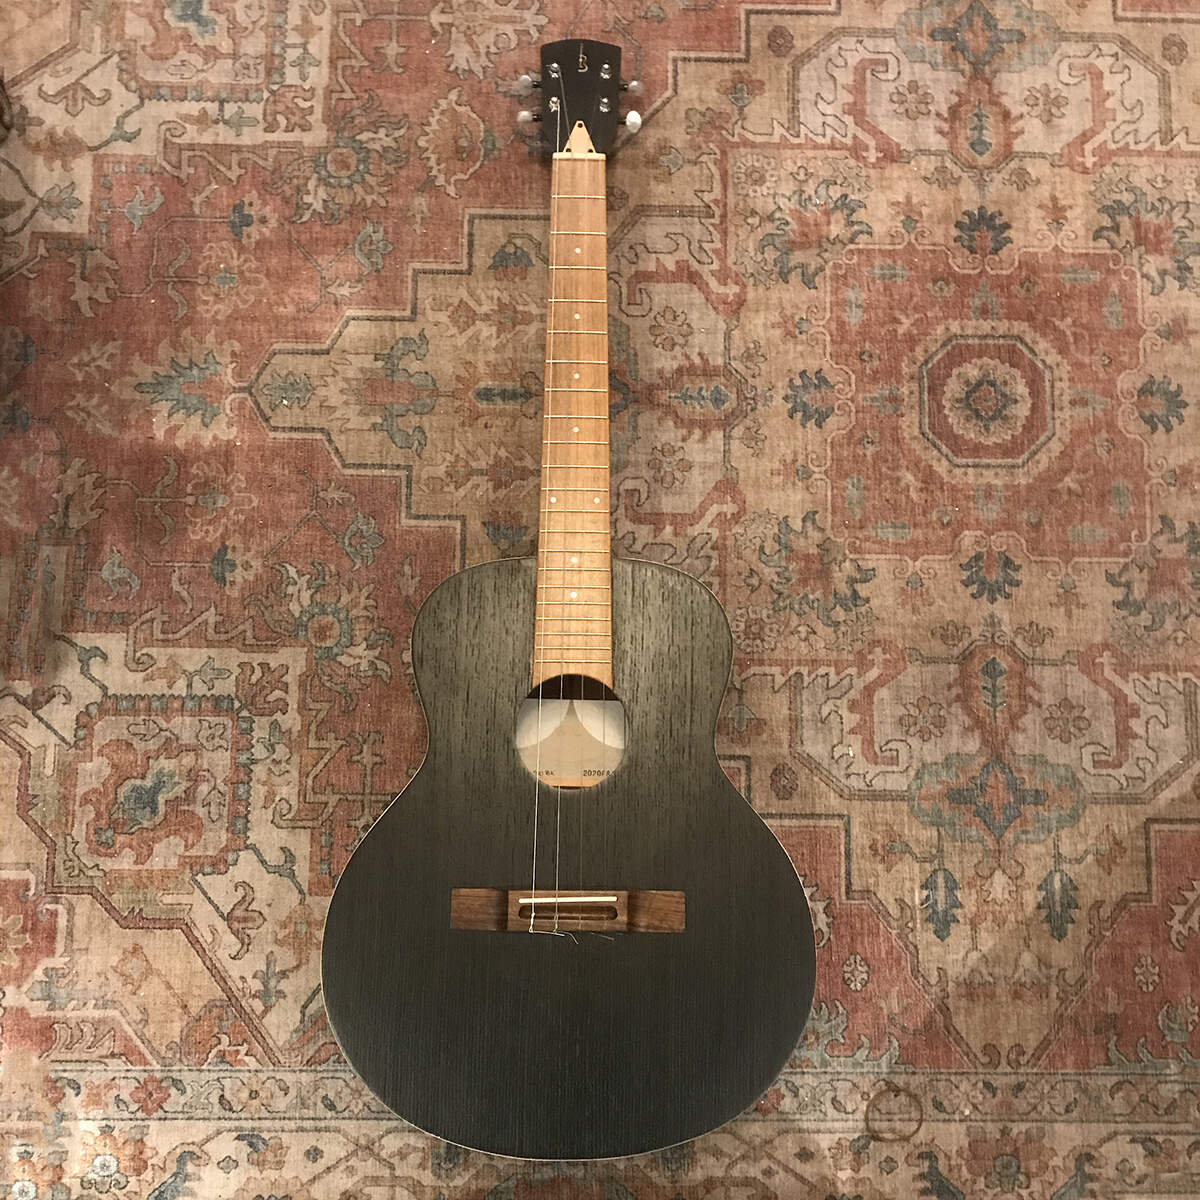 Big Bariton ukulele